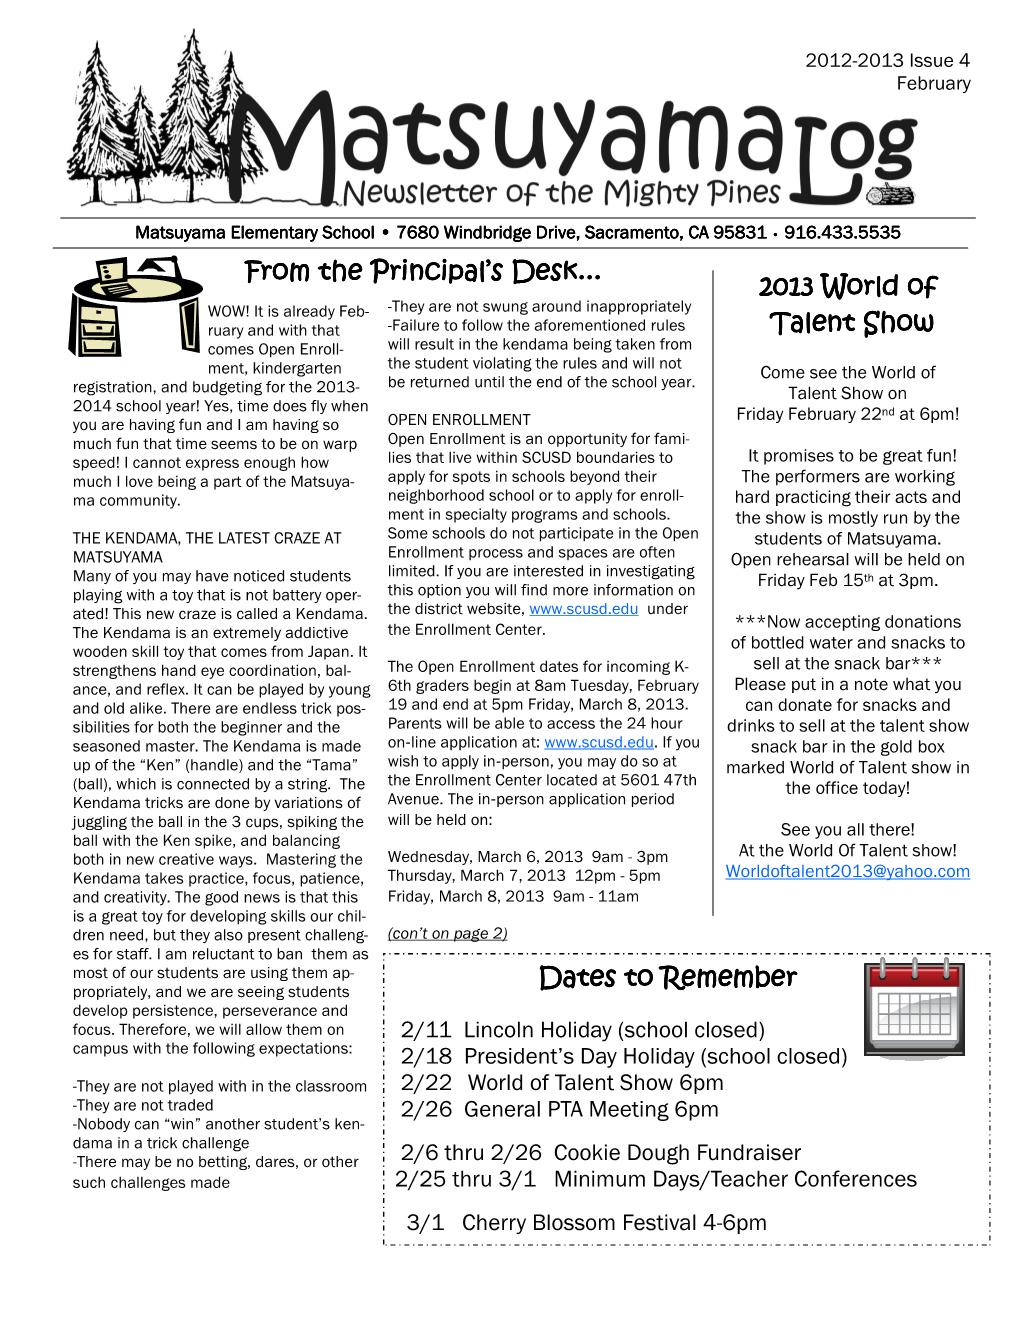 February 2013 Newsletter Final